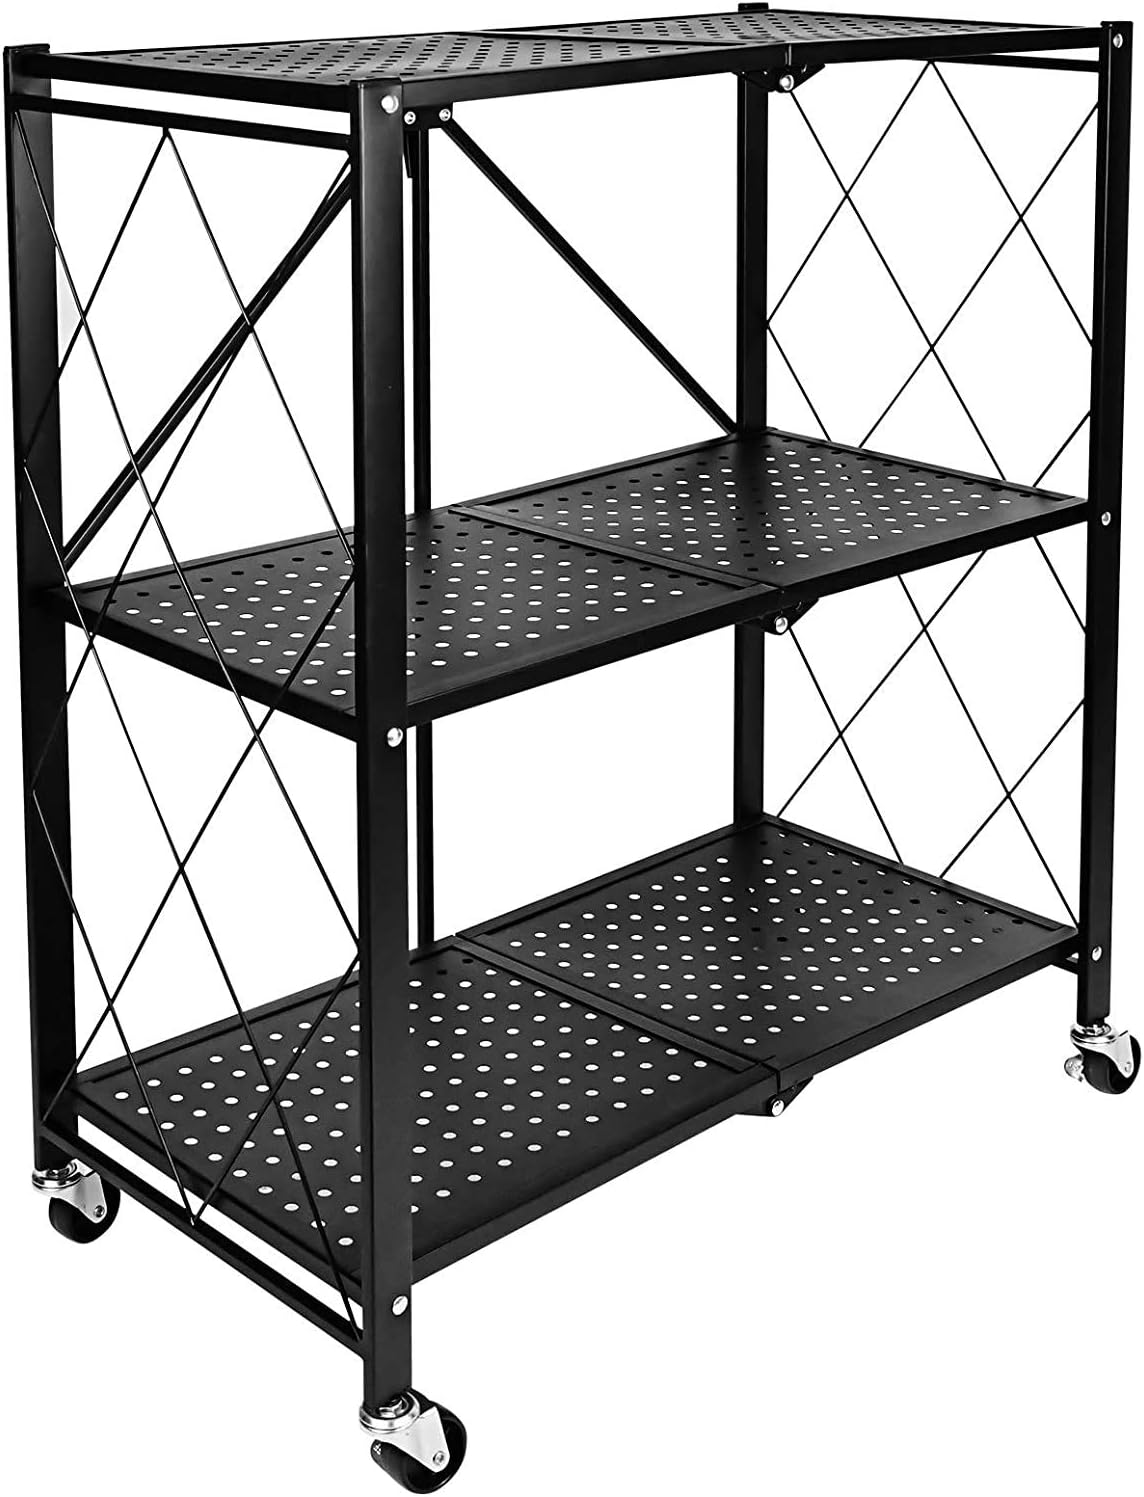 Kitchen Garage Storage Wire Shelves Unit 3 Tier Shelving Holder Organizer Rack 